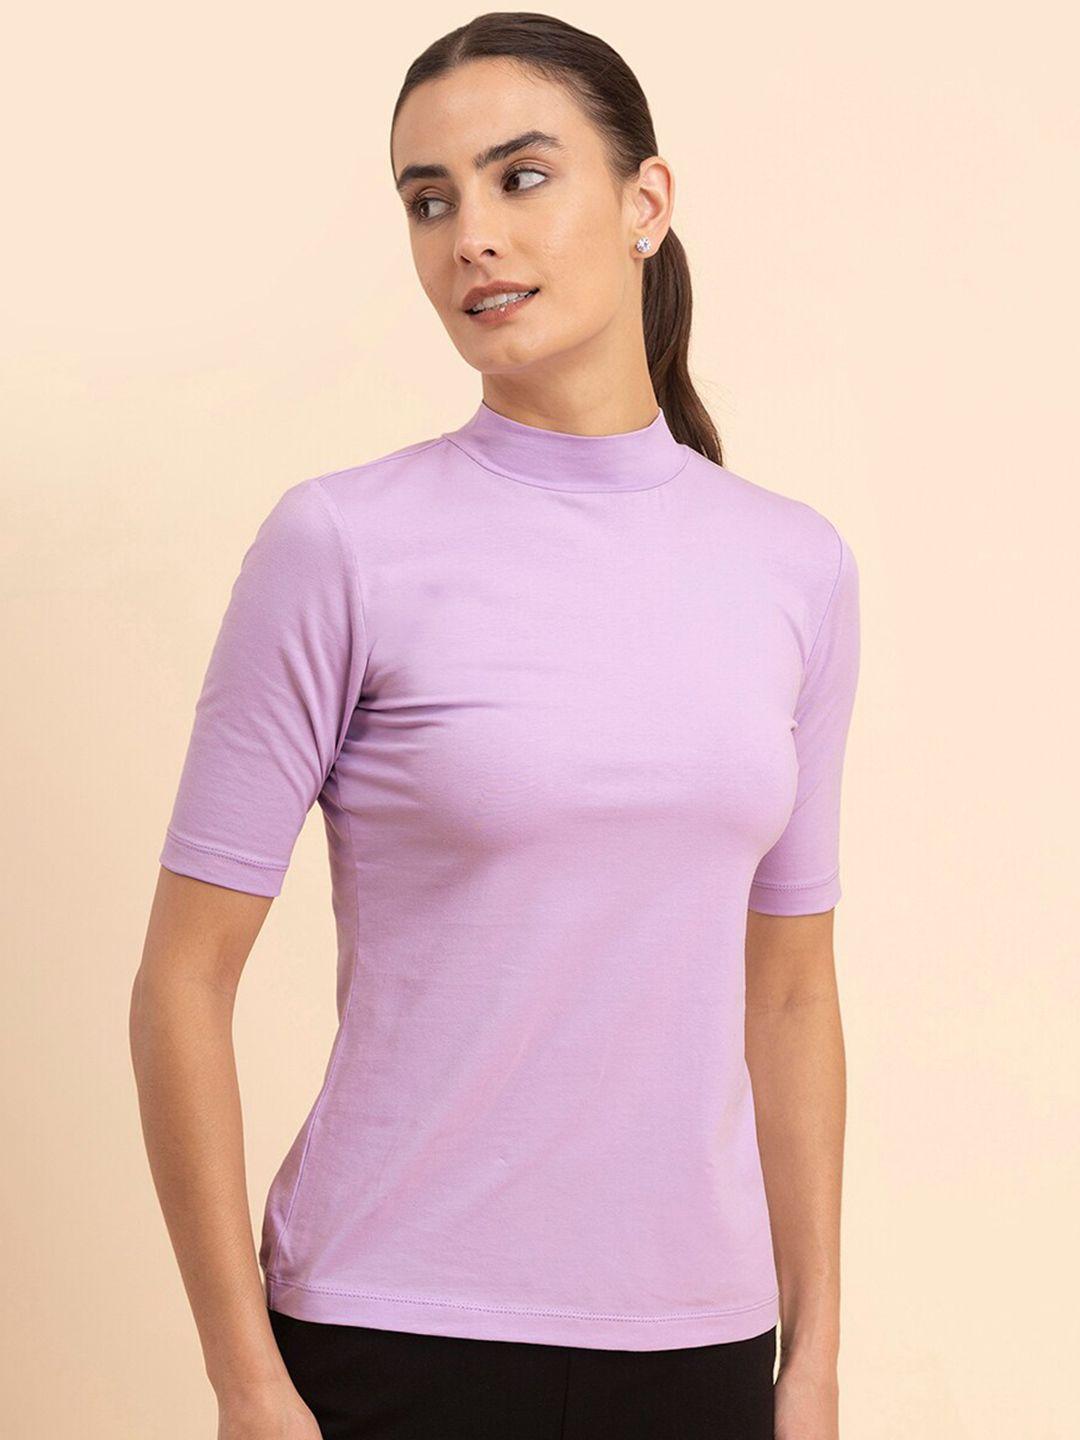 fablestreet women cotton lycra high neck t-shirt